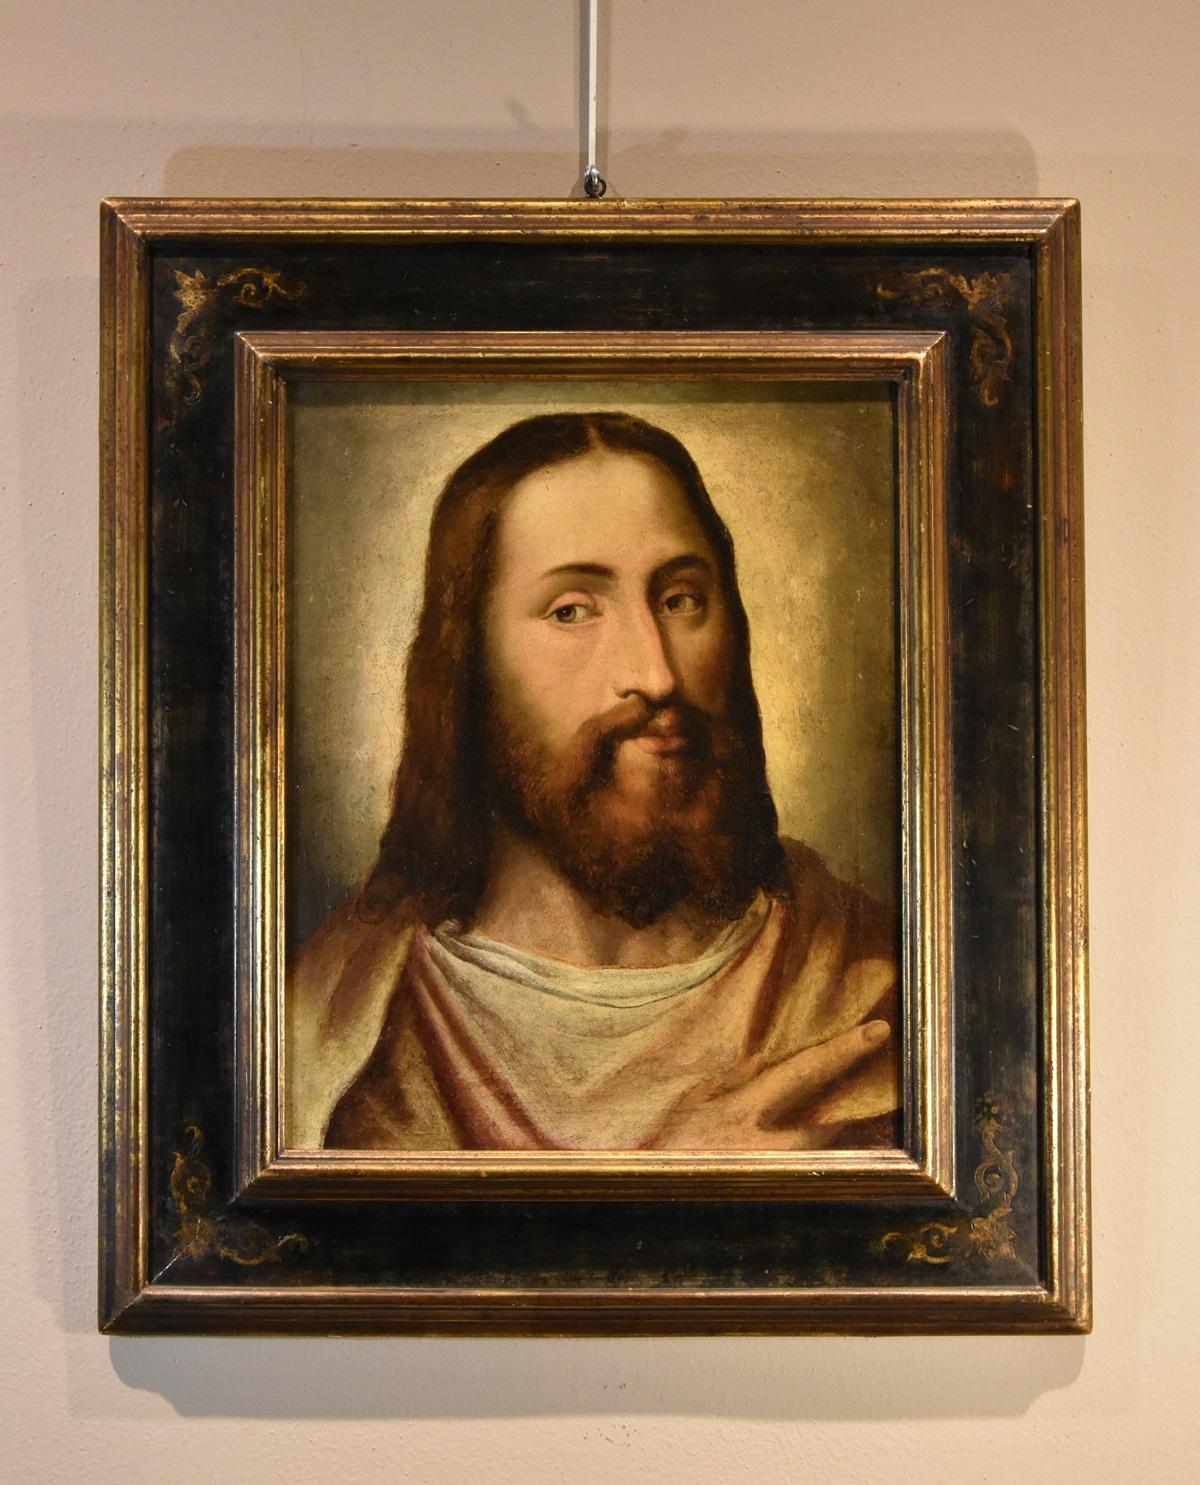 Portrait du Christ Titien 16ème siècle Huile sur toile Grand maître Venezia Italie 9